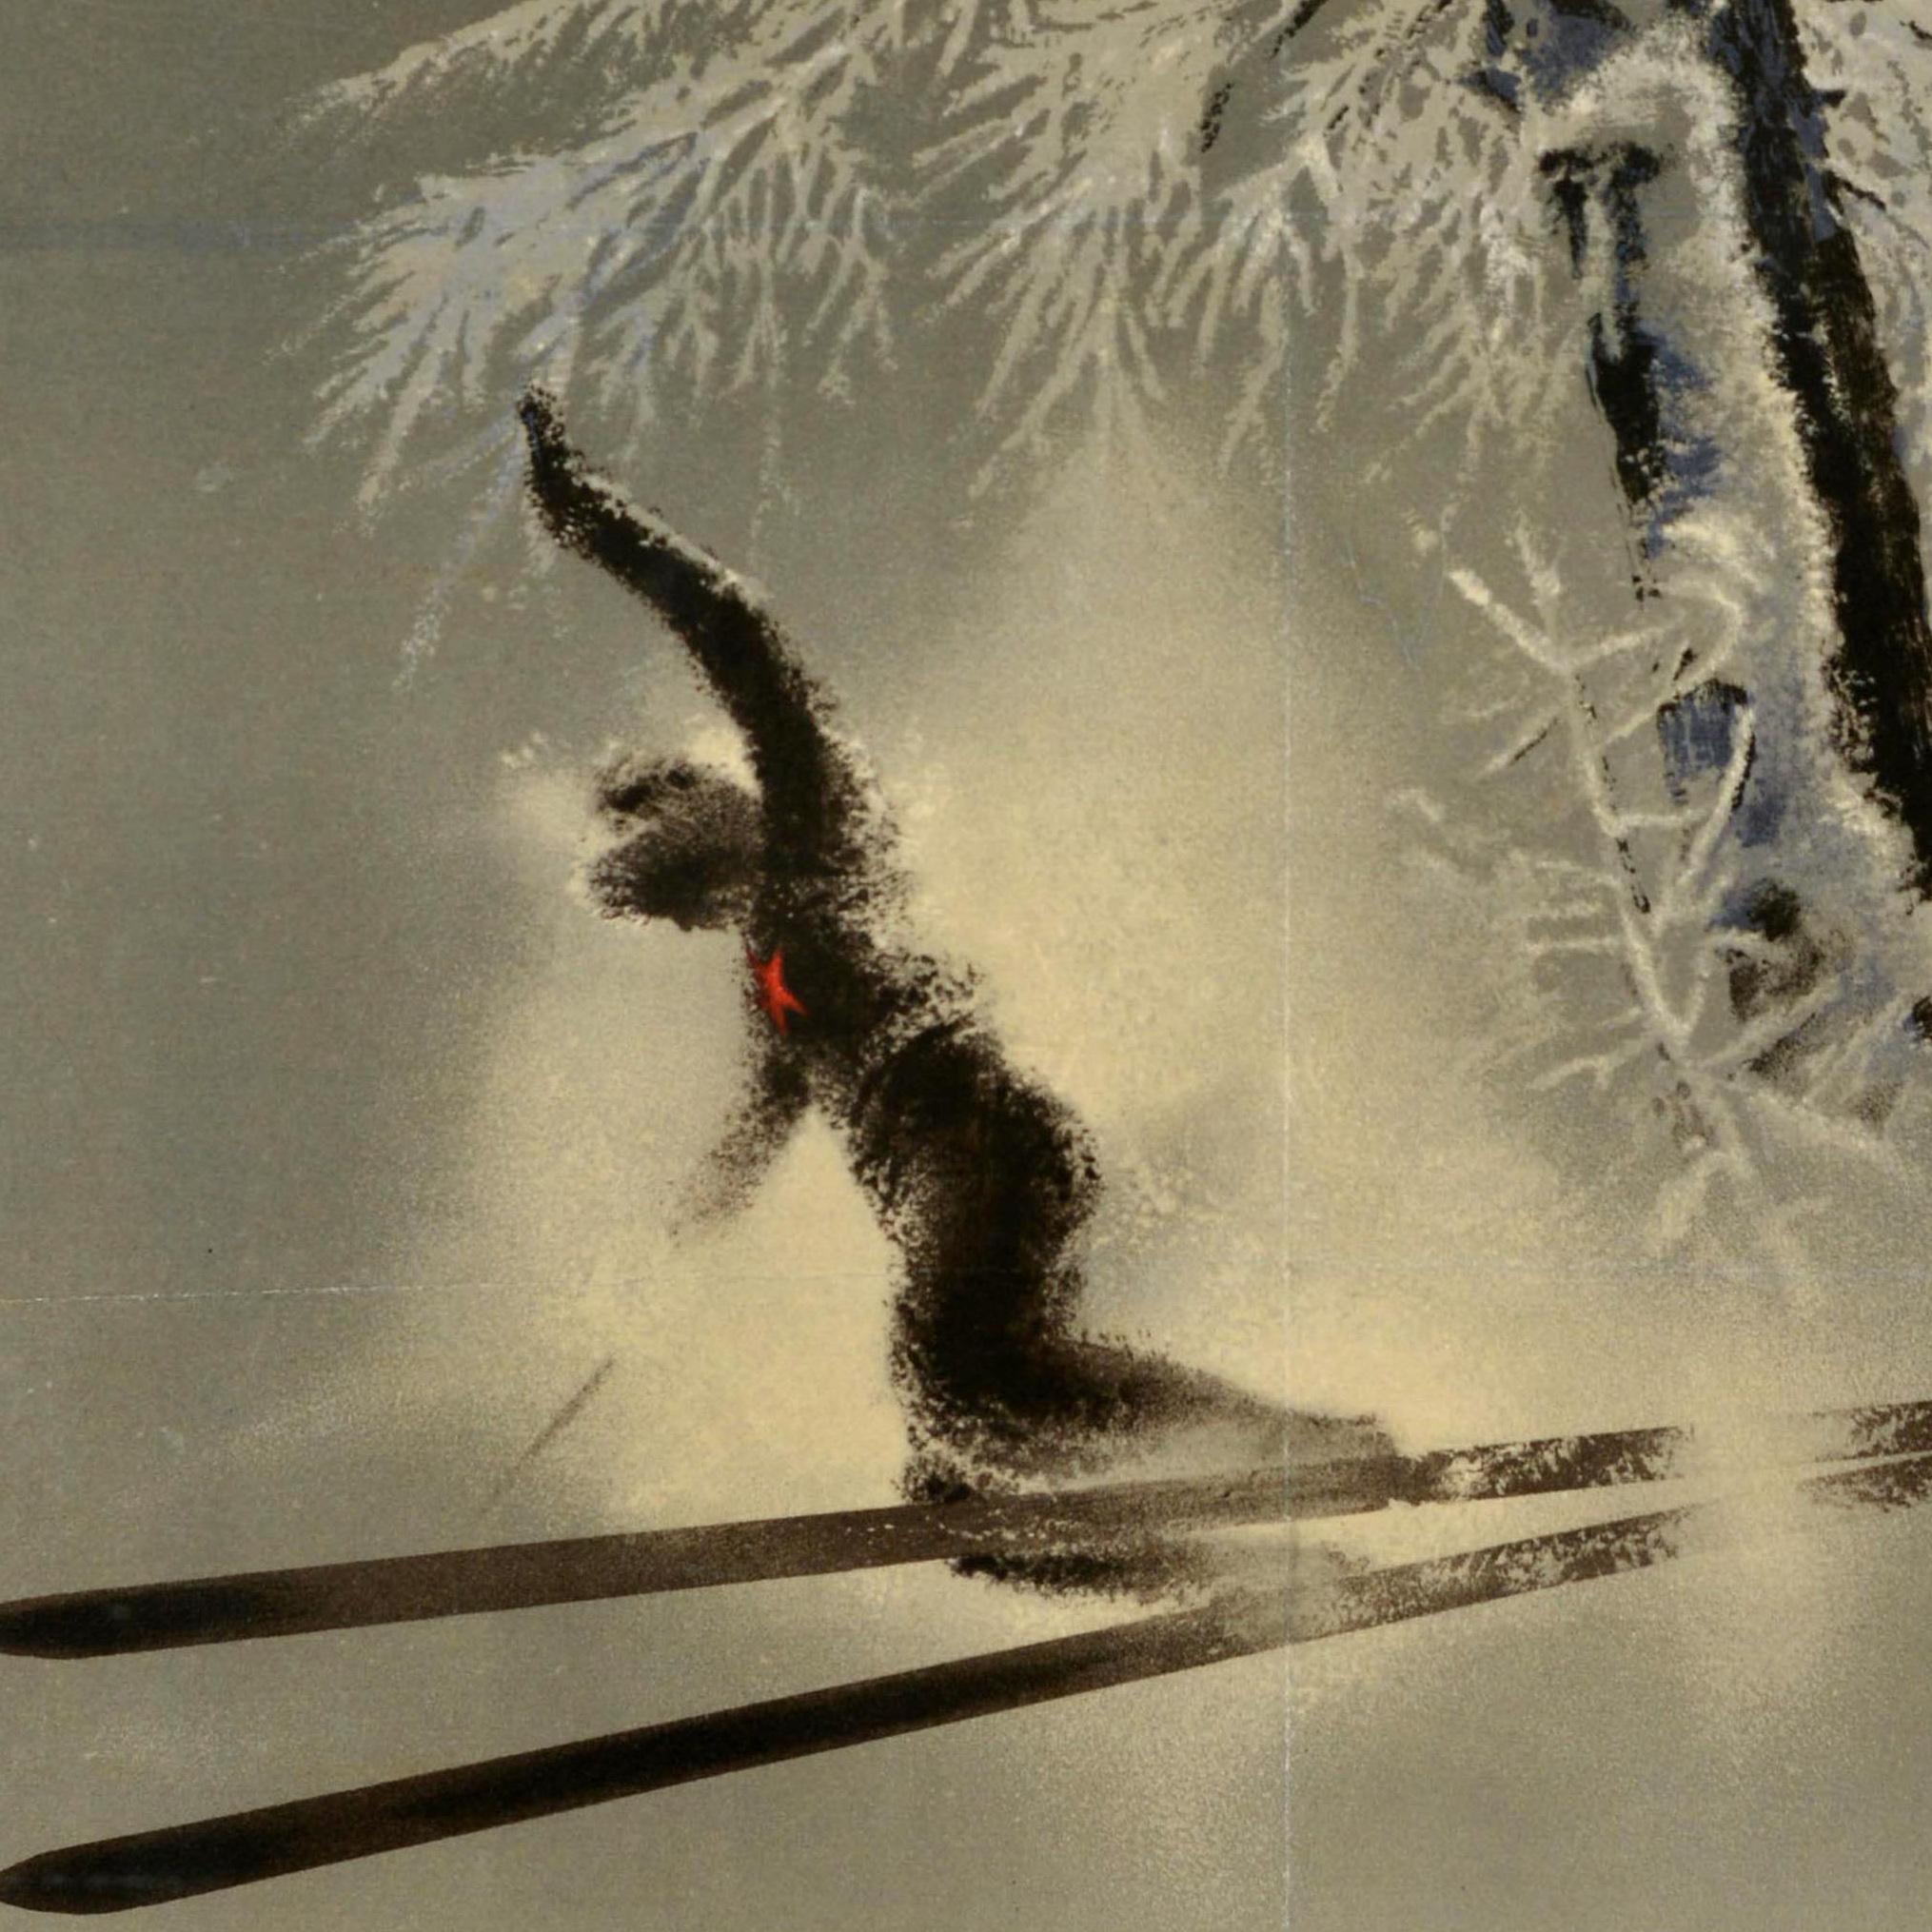 Originales sowjetisches Reiseplakat von Intourist - Winter in the USSR - mit einer Illustration des bekannten Künstlers Nikolai Zhukov (1908-1973) von Skifahrern, die mit hoher Geschwindigkeit einen Abhang hinunterfahren, vorbei an einem